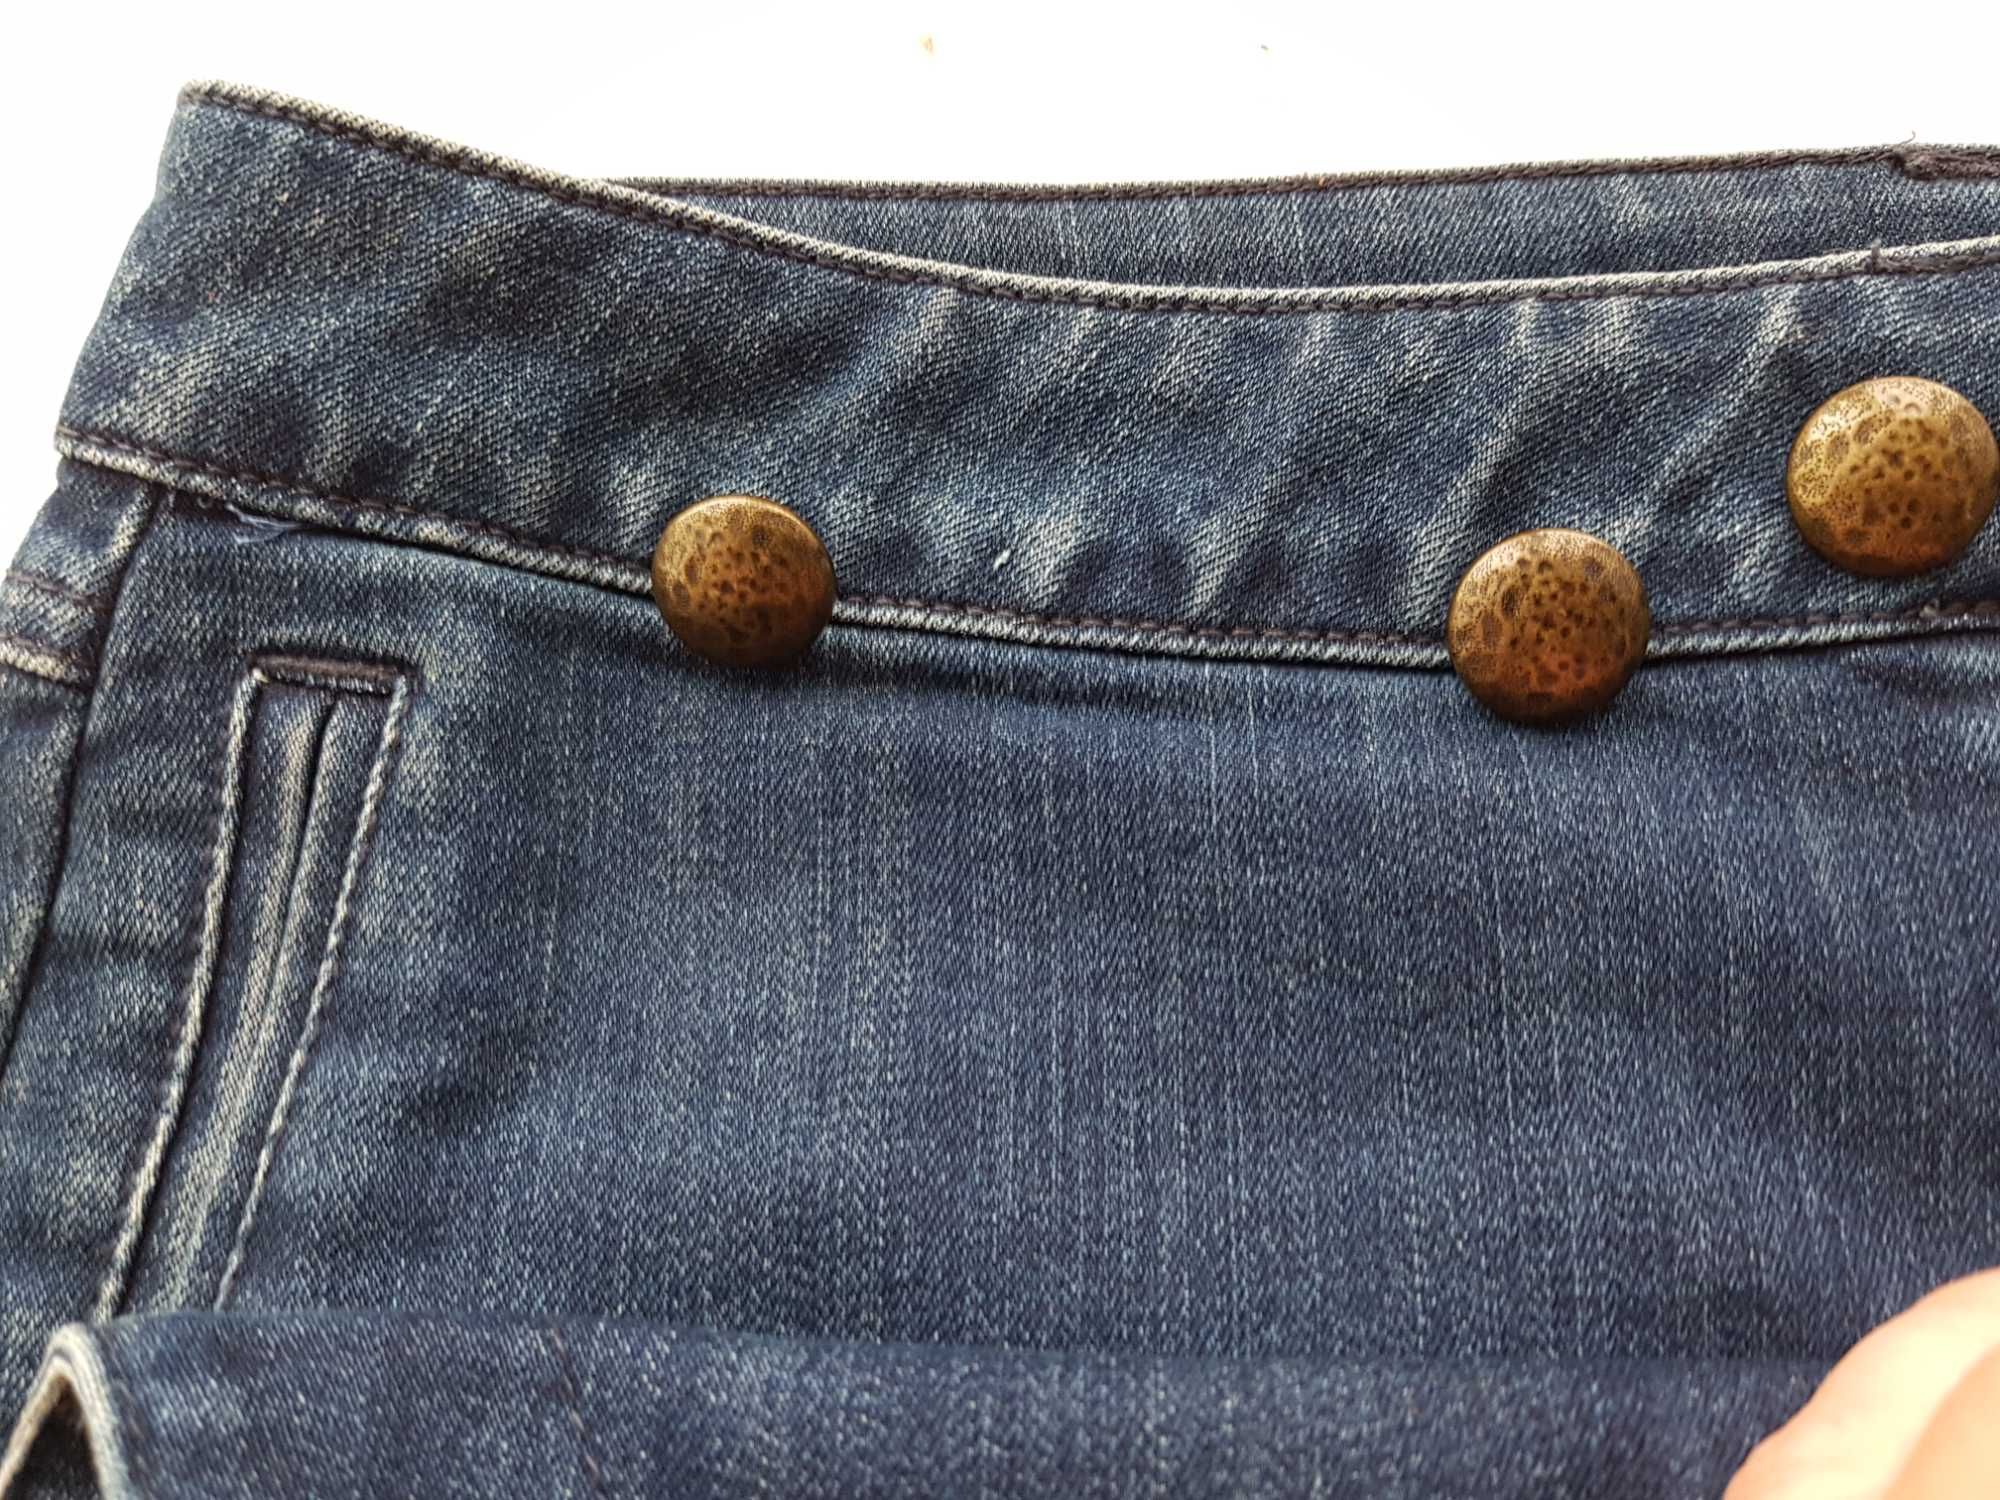 оригинальная джинсовая мини юбка Mango